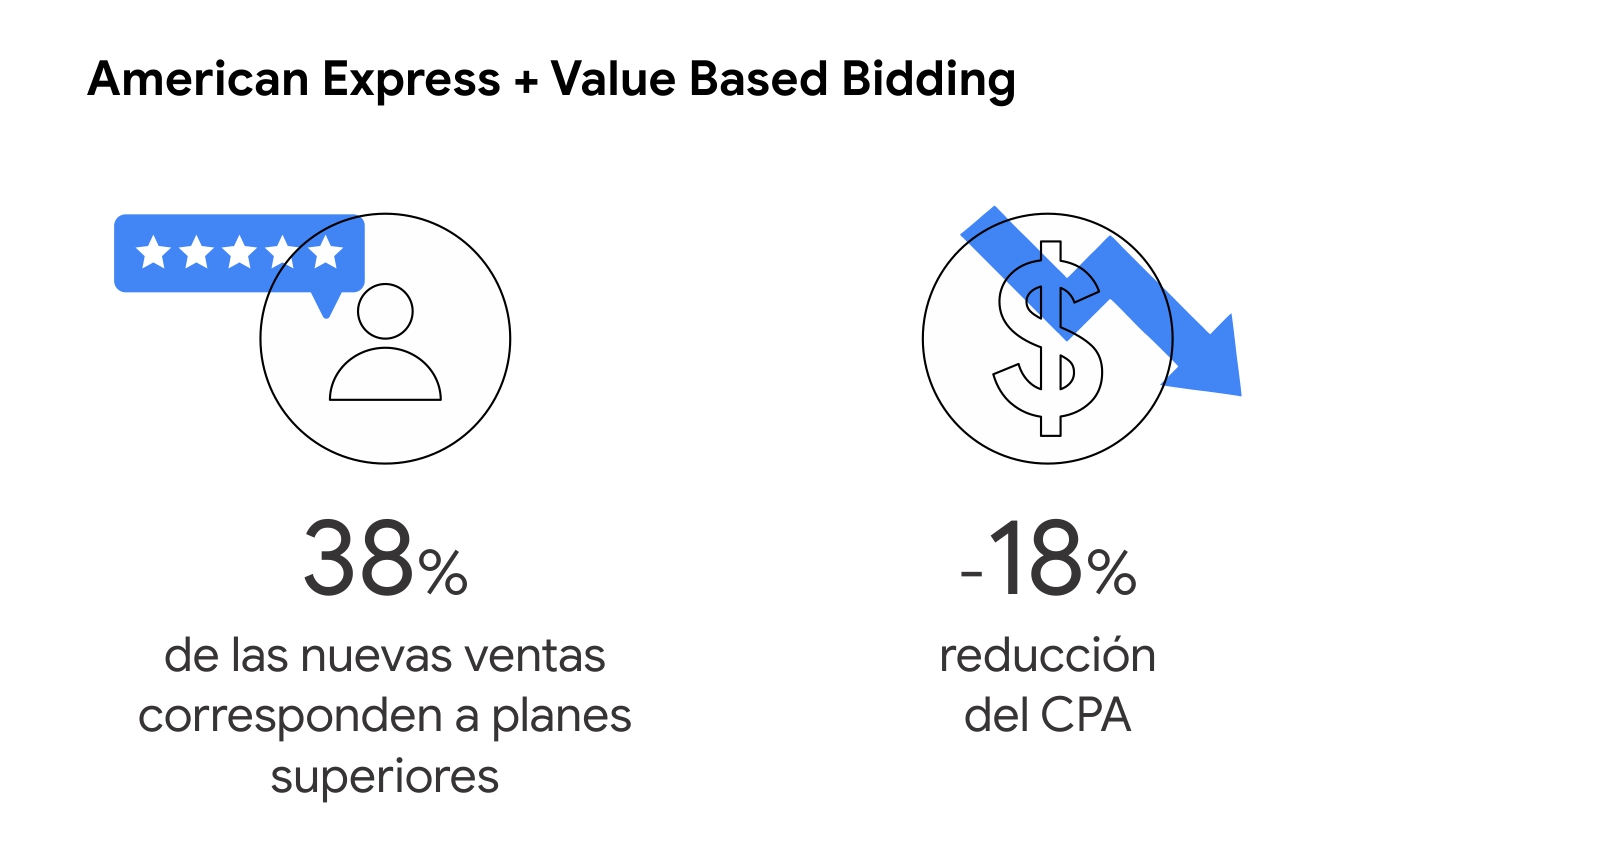 Dos íconos muestran los resultados que tuvo American Express cuando aplicó Value Based Bidding: 38% de las nuevas ventas corresponden a planes superiores y -18% reducción del CPA.